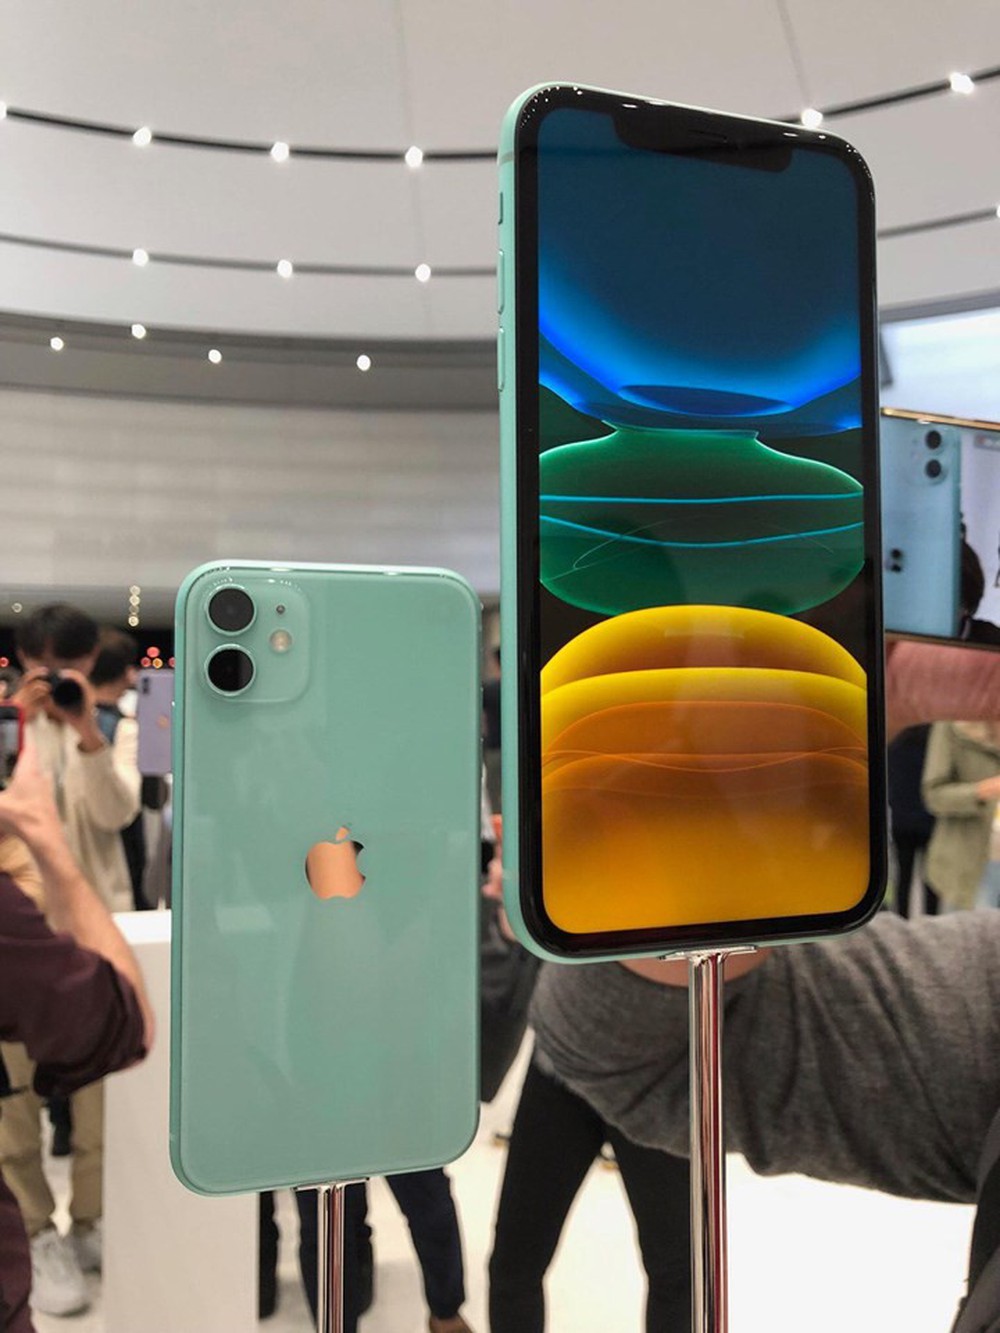 iPhone 11 vừa ra mắt, hội chị em tấm tắc khen màu sắc chuẩn bánh bèo nhưng cụm camera lại là một trò đùa hài hước - Ảnh 2.